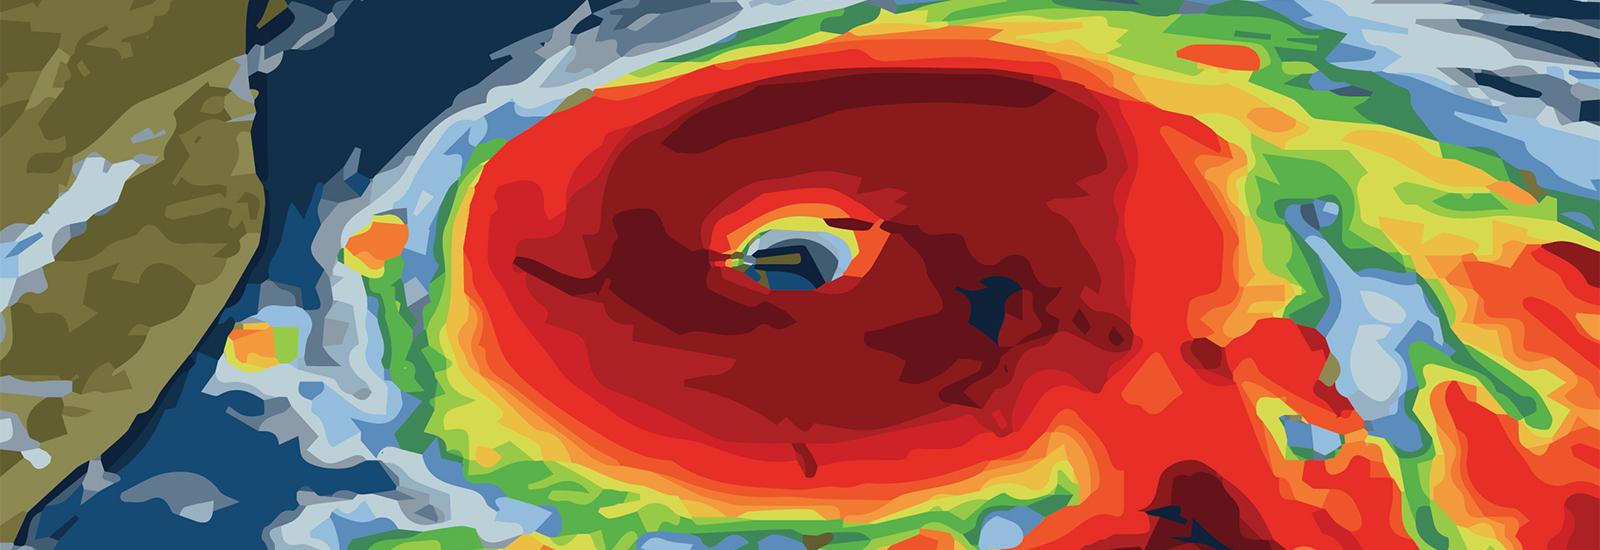 hurricane graphic 